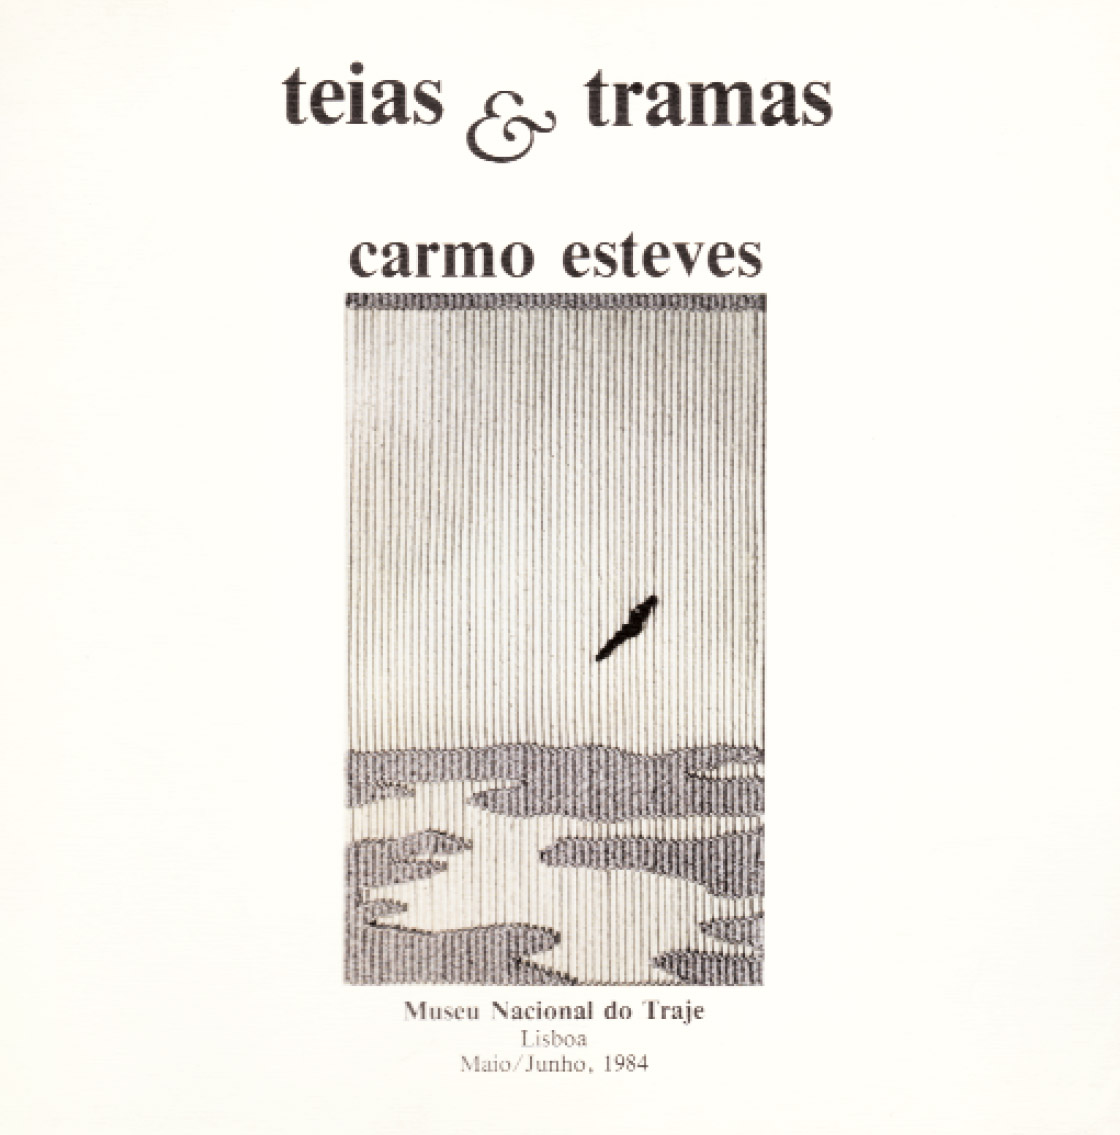 Teias e Tramas by Carmo Esteves - Museu Nacional do Traje